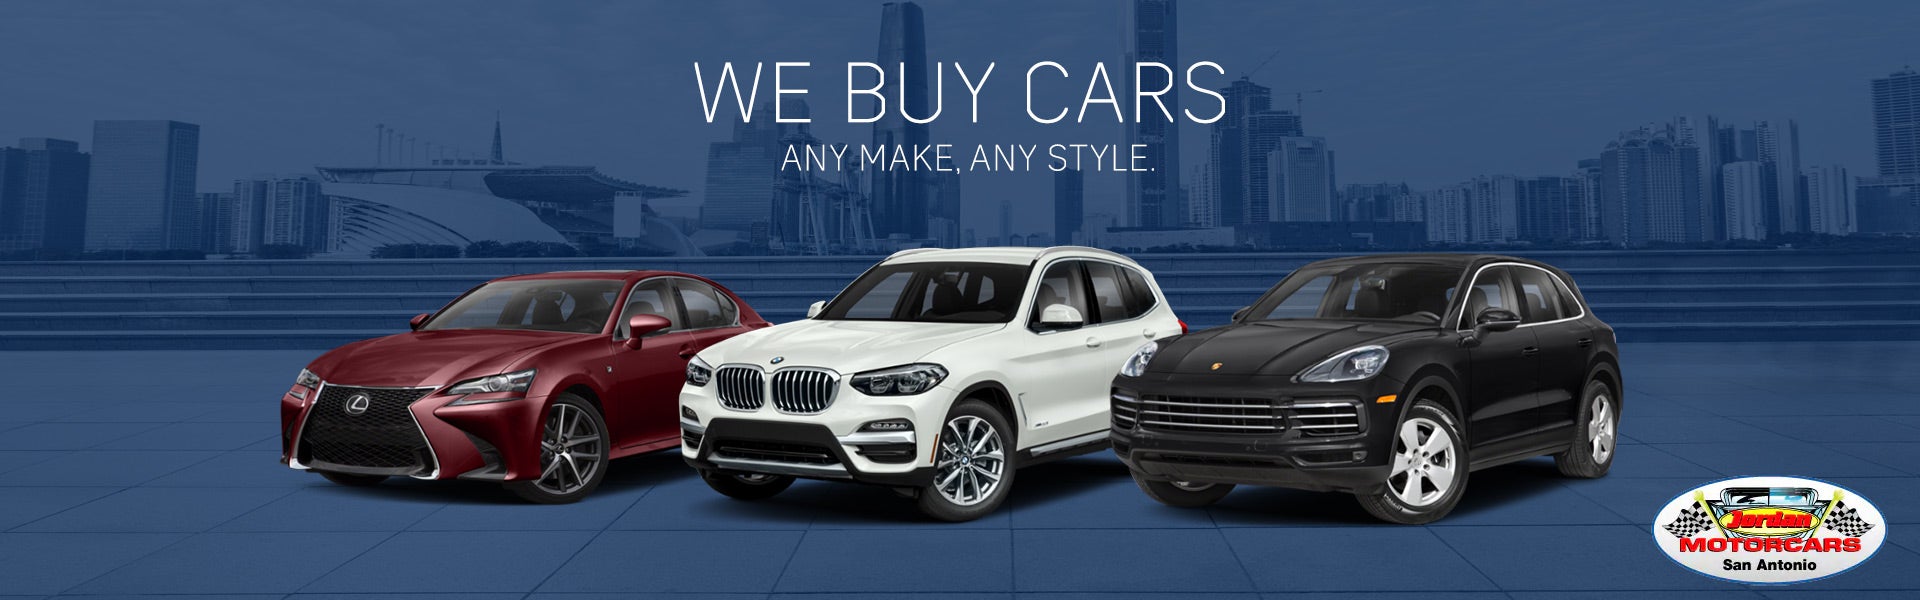 we buy cars!